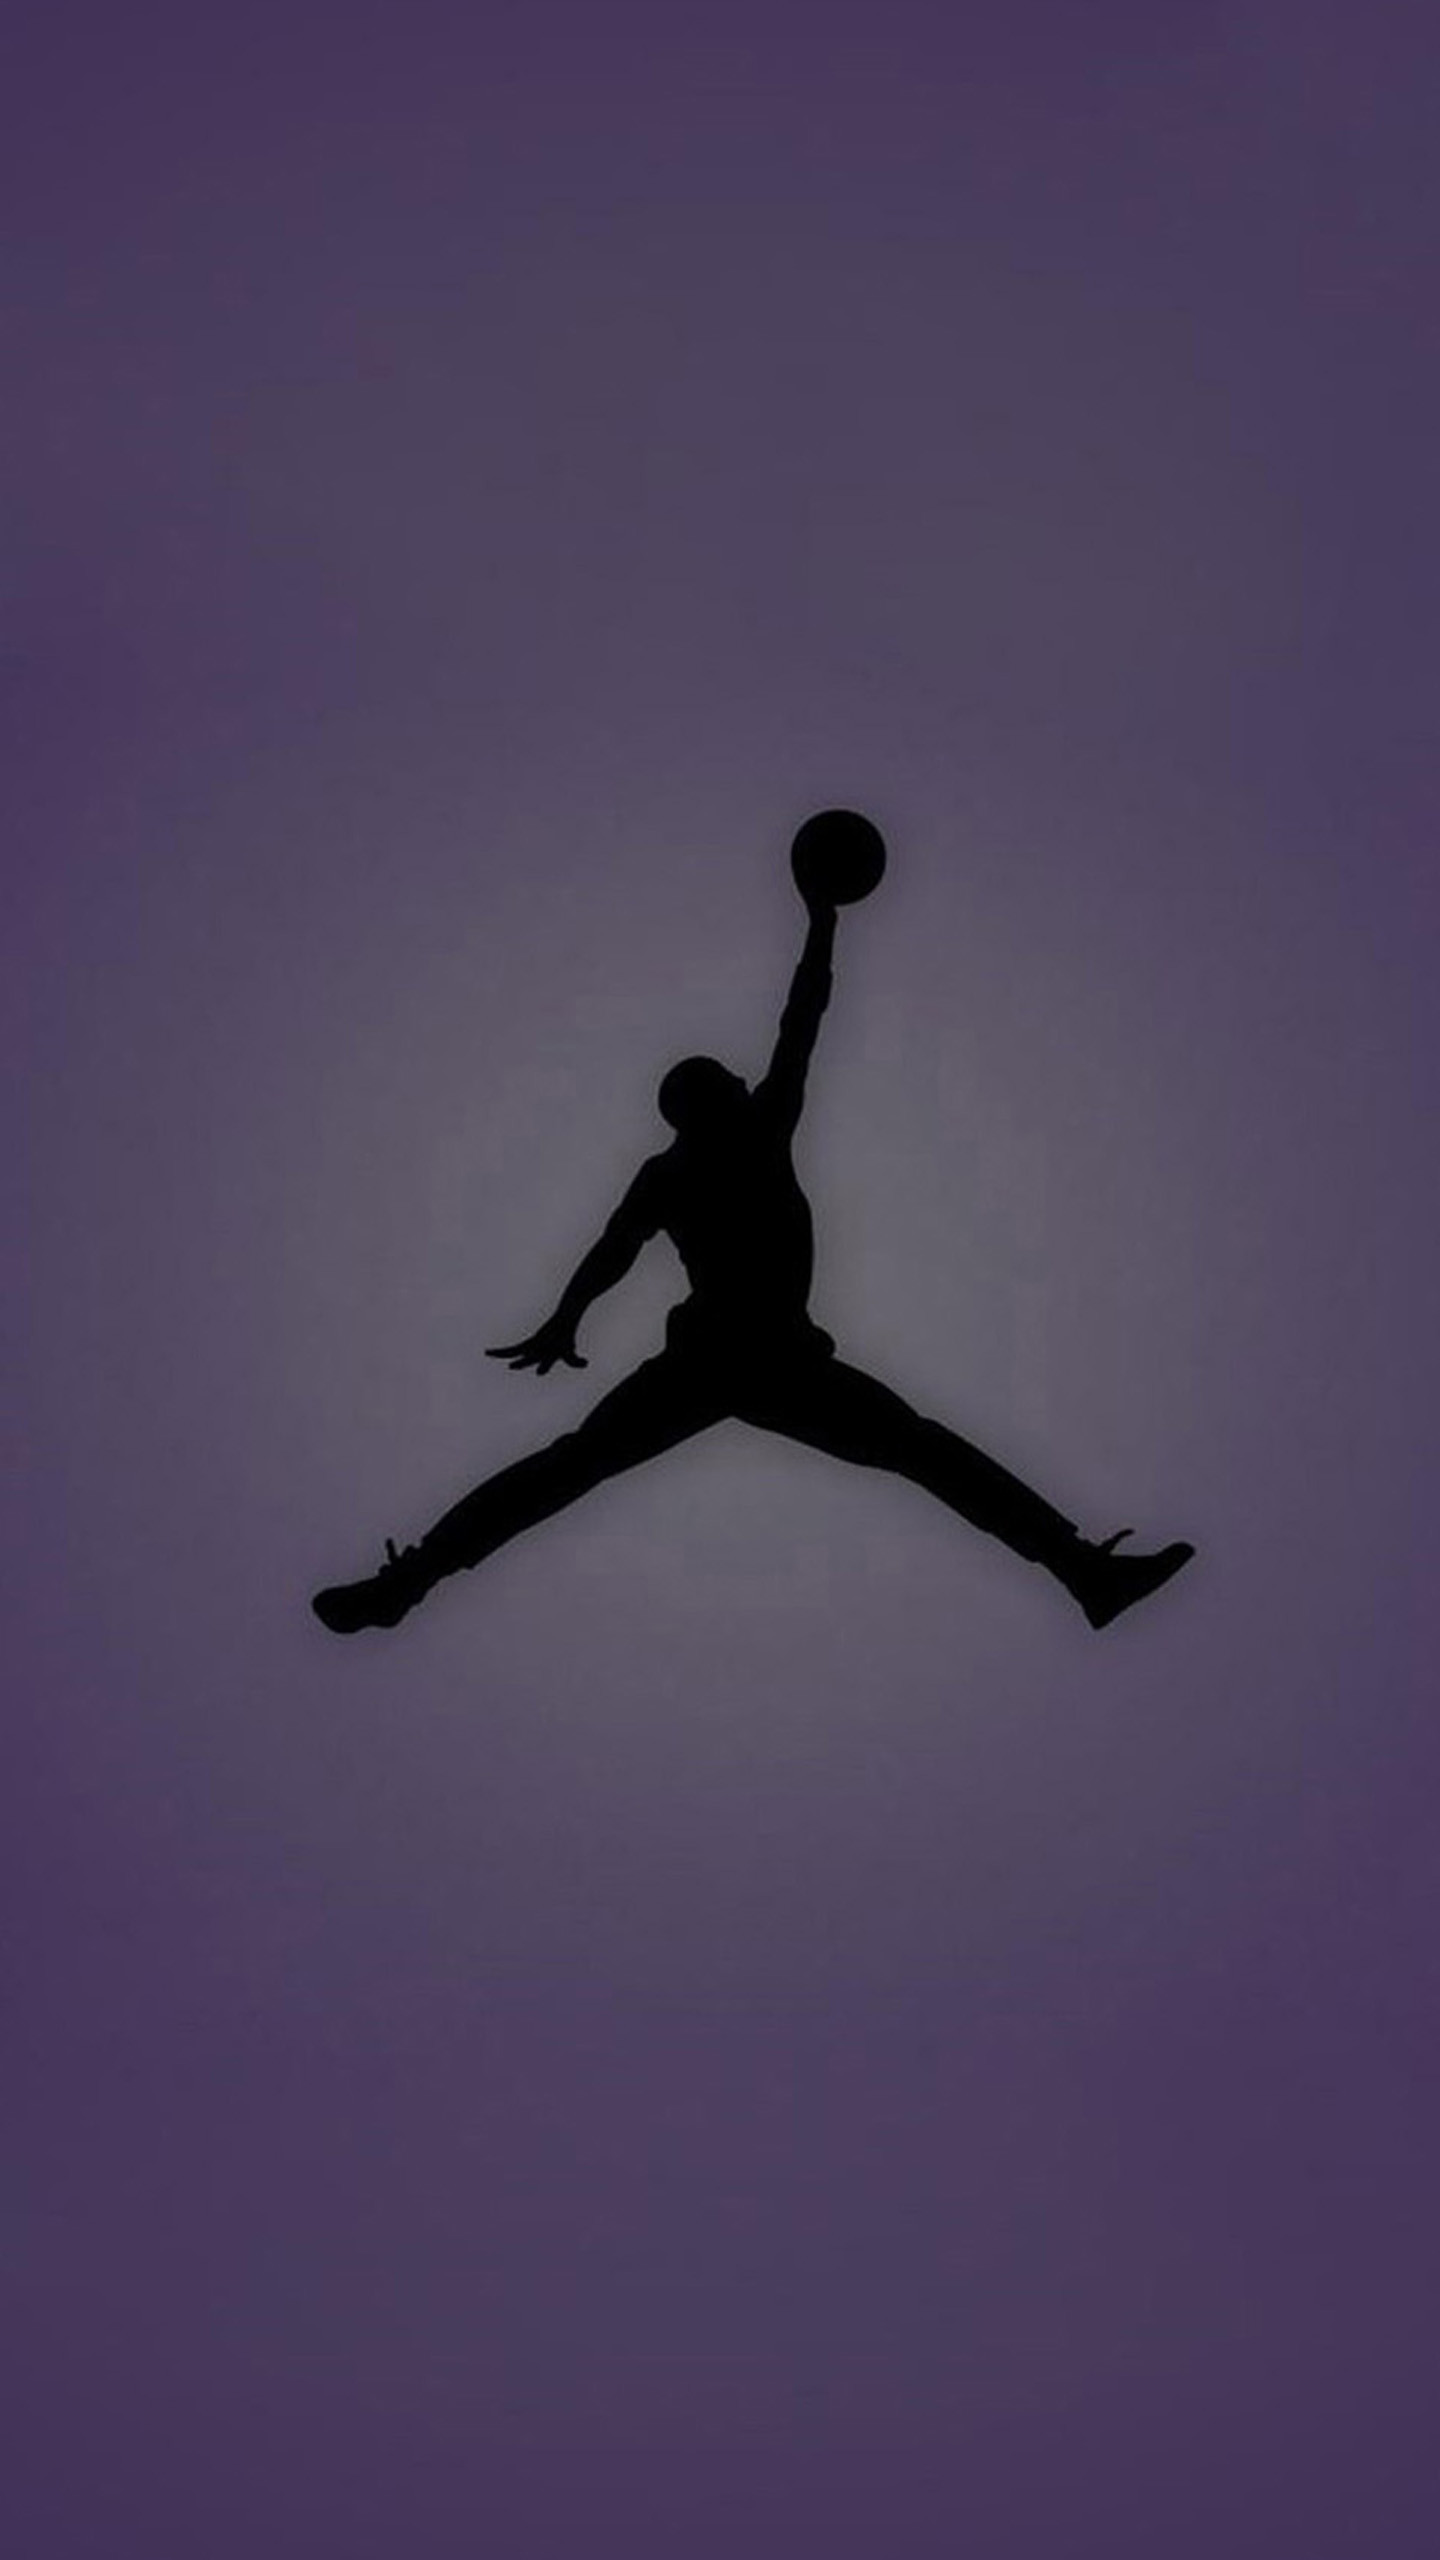 Michael Jordan Wallpapers Top 38 Best Michael Jordan Wallpapers  HQ 